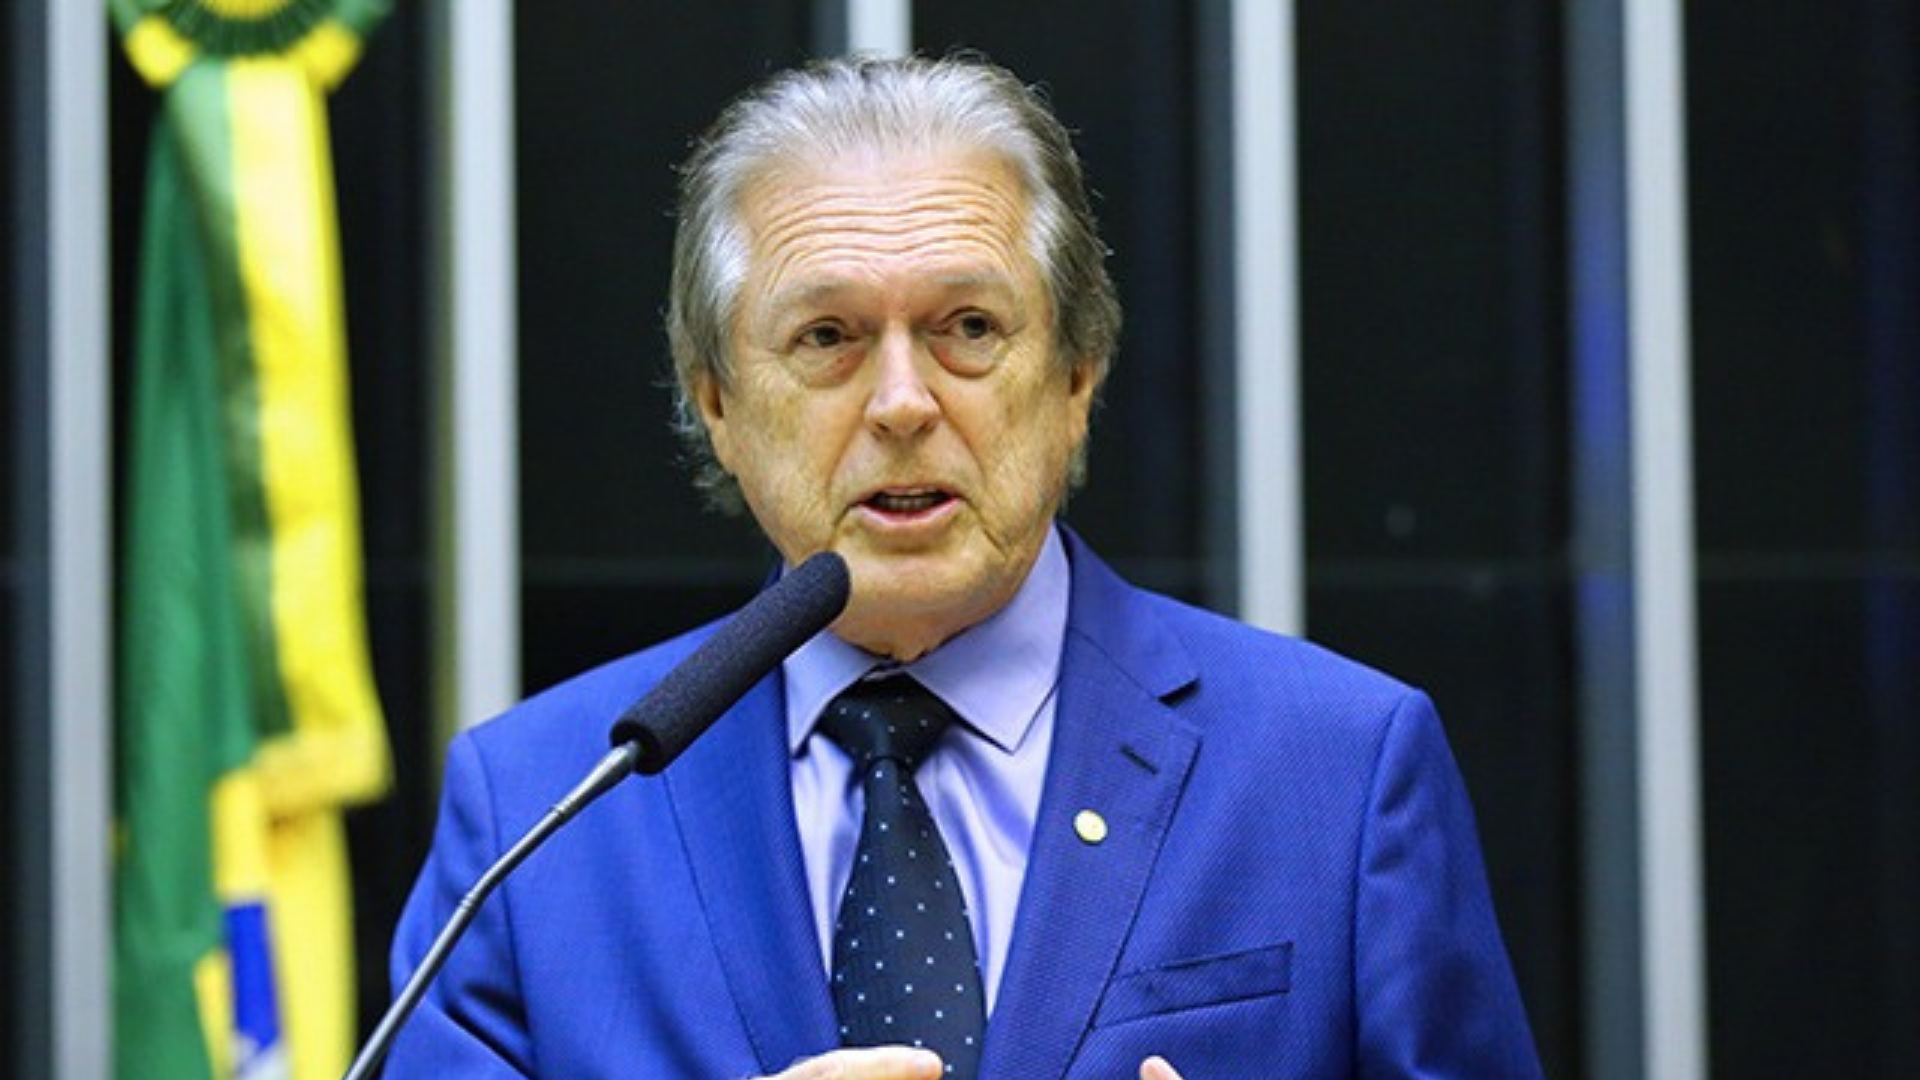 PSDB, MDB e União Brasil abrem negociação. Foto de Luciano Bivar com terno azul, falando no plenário da Câmara. Ele tem cabelos brancos e pele branca.